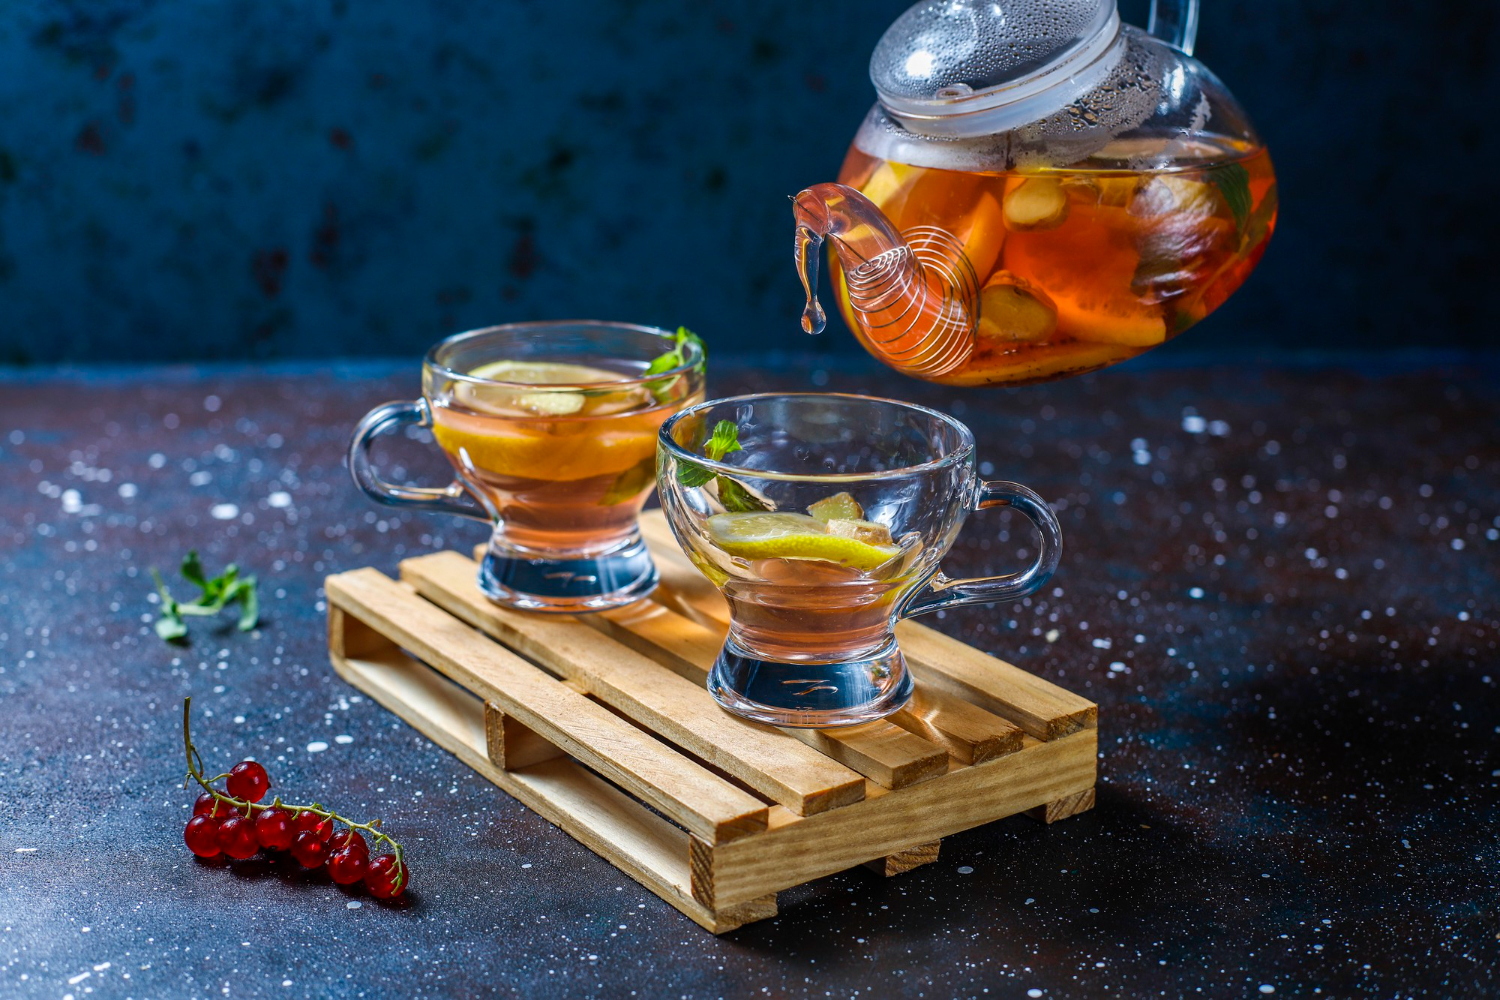 От гриппа и простуды спасёт витамин С — ешьте мандарины, апельсины, пейте чай с лимоном. Фото © Freepik